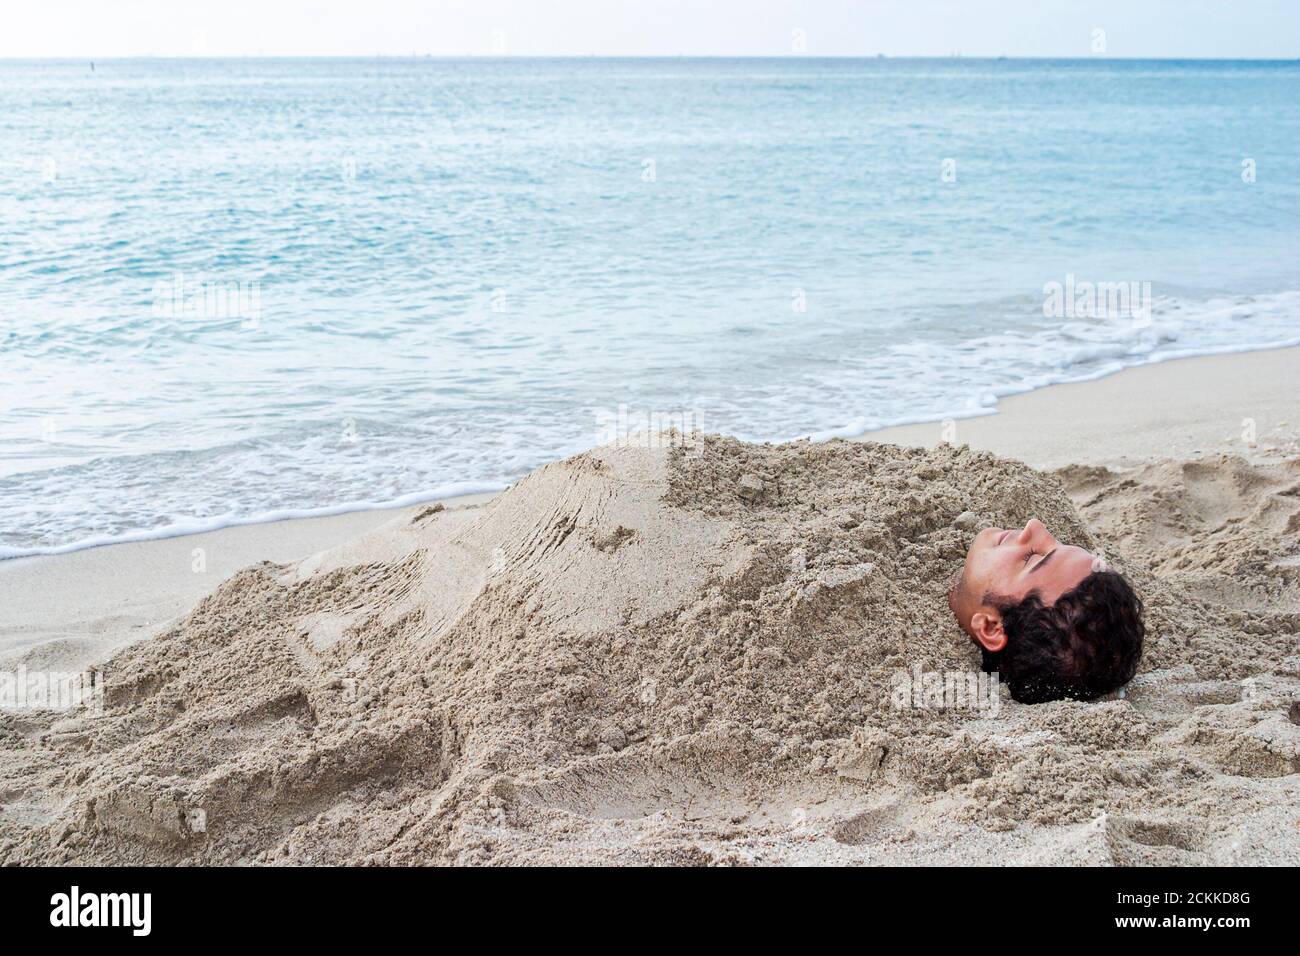 Miami Beach Florida,Atlantic Ocean Shore,riva costiera,ragazzo ispanico maschio,sabbia sepolta da surf d'acqua,adolescente adolescente adolescente Foto Stock